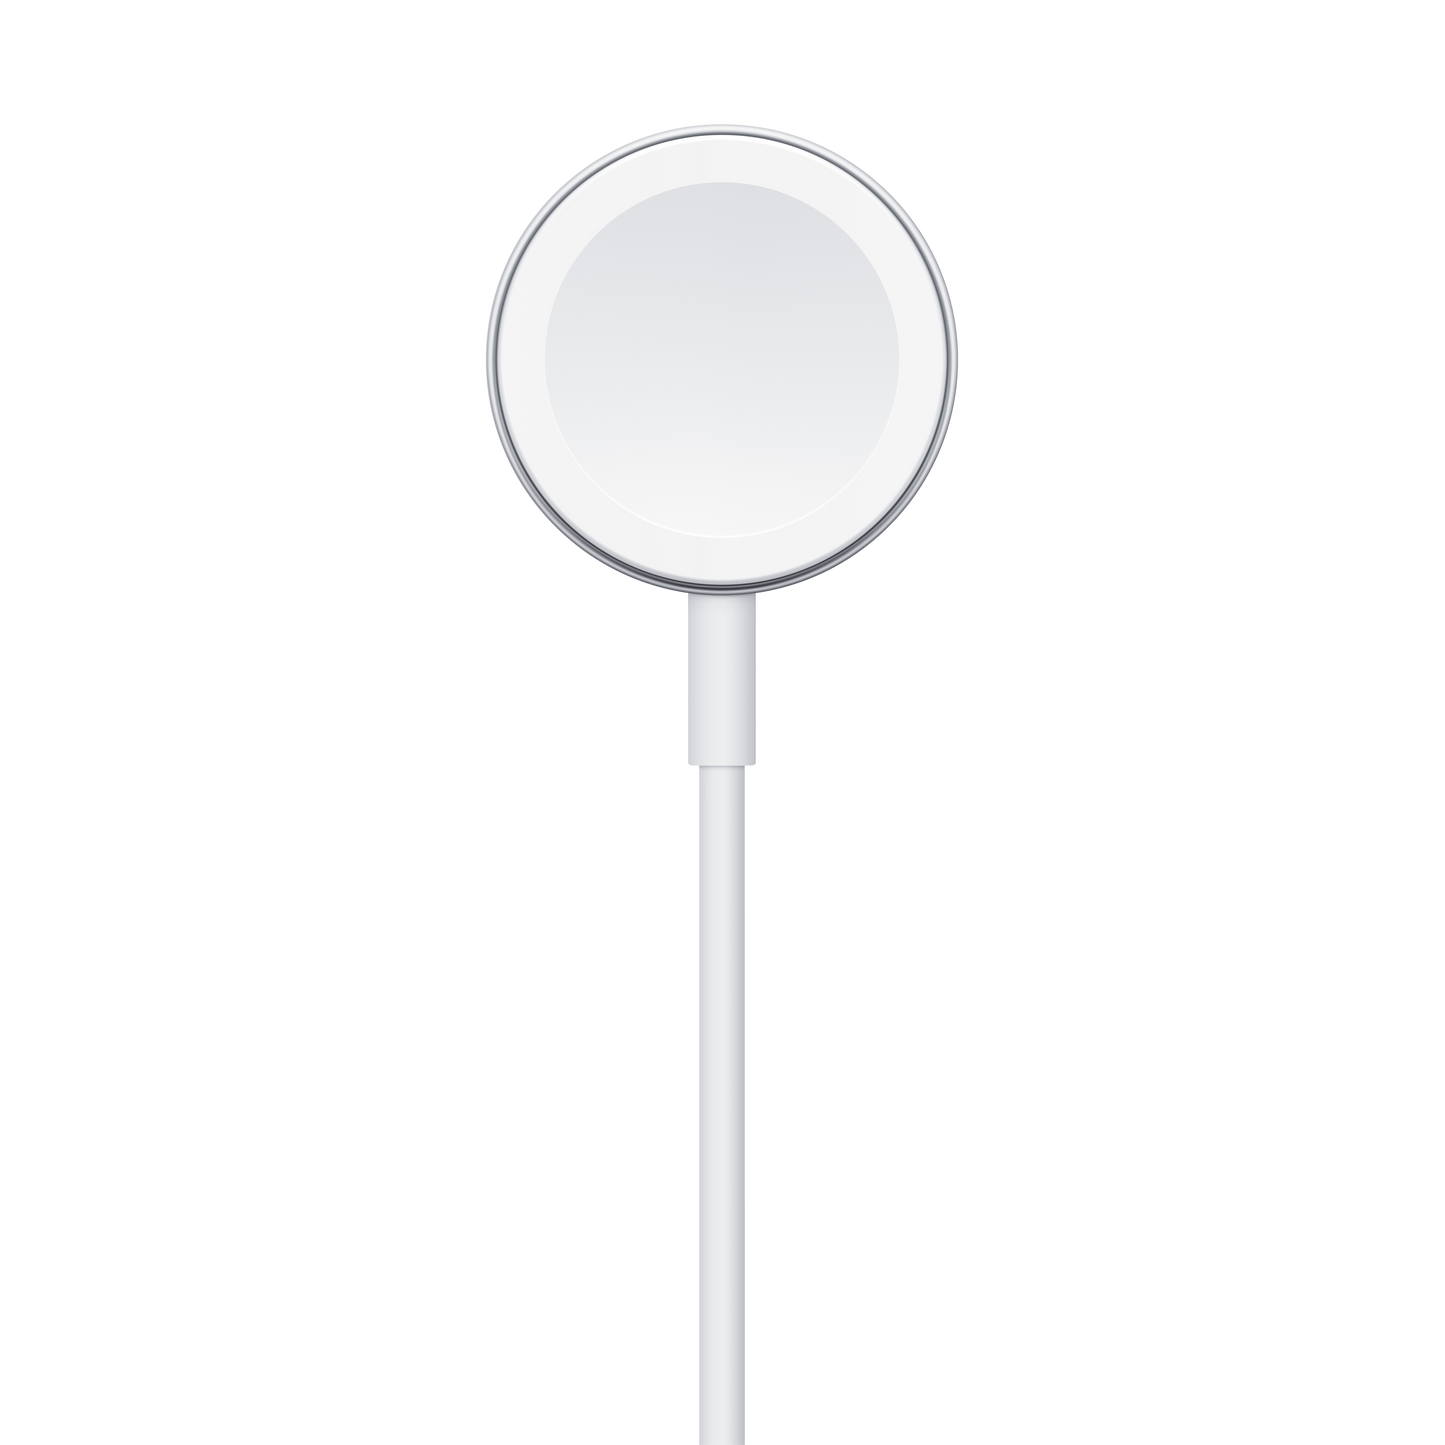 Cable de carga magnética para el Apple Watch (1 metro) - Rossellimac